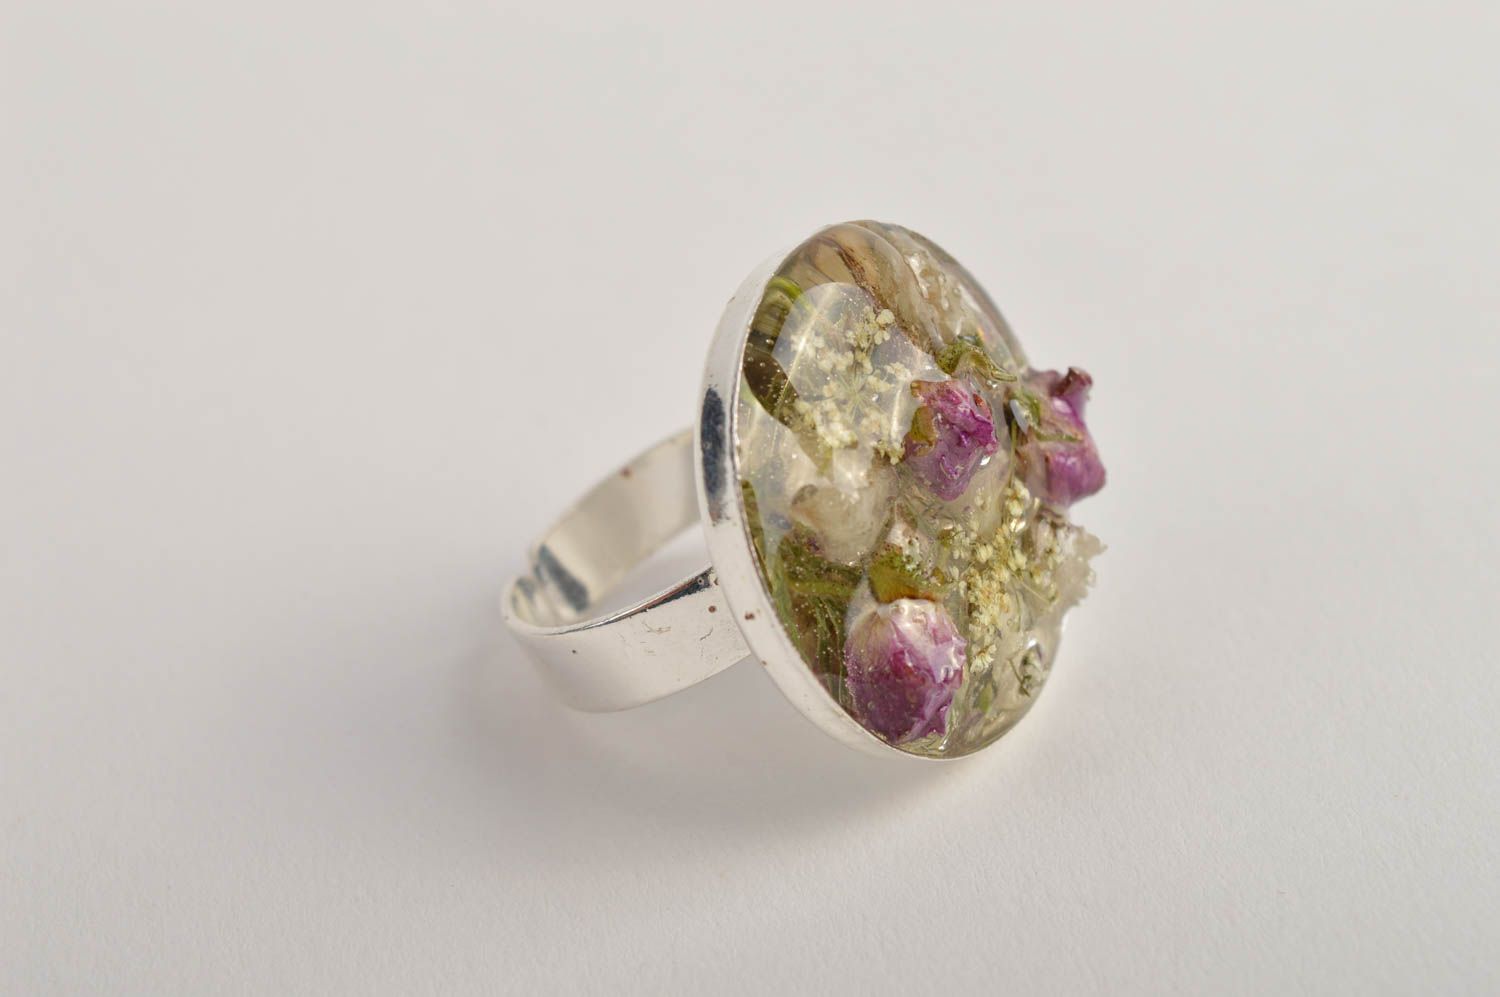 Кольцо ручной работы кольцо из эпоксидной смолы и цветов модное кольцо авторское фото 2